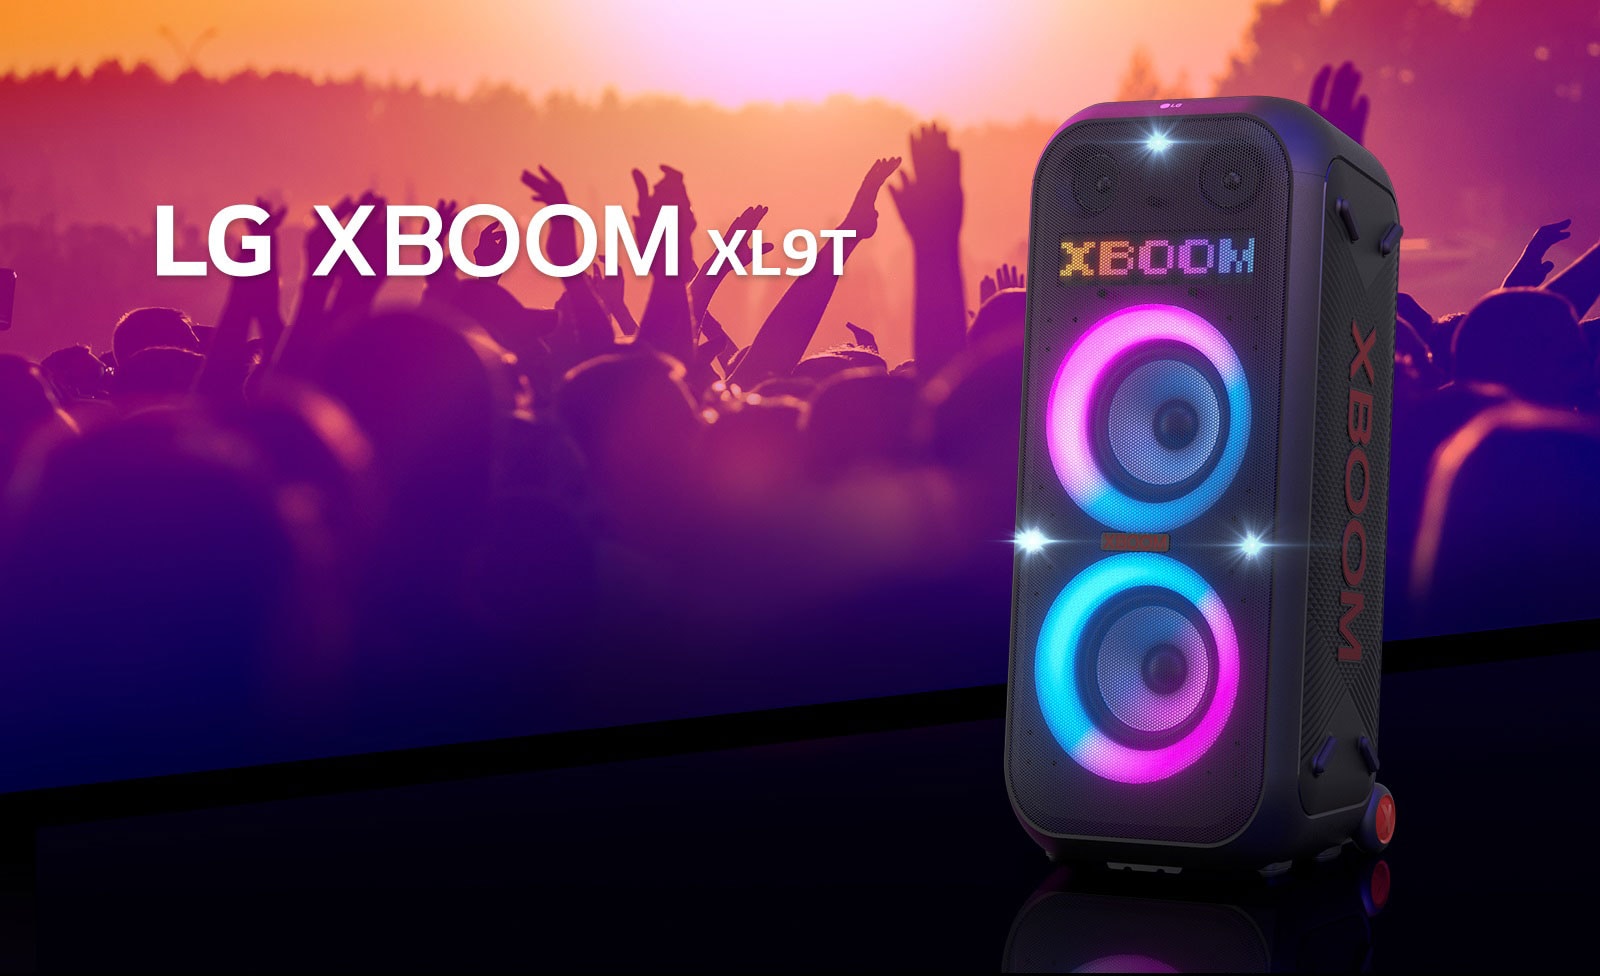 LG XBOOM XL9T se coloca en la superficie con vista diagonal. Se enciende la iluminación multicolor y la pantalla muestra la palabra "XBOOM". Detrás del altavoz, un montón de gente disfrutando de la fiesta.